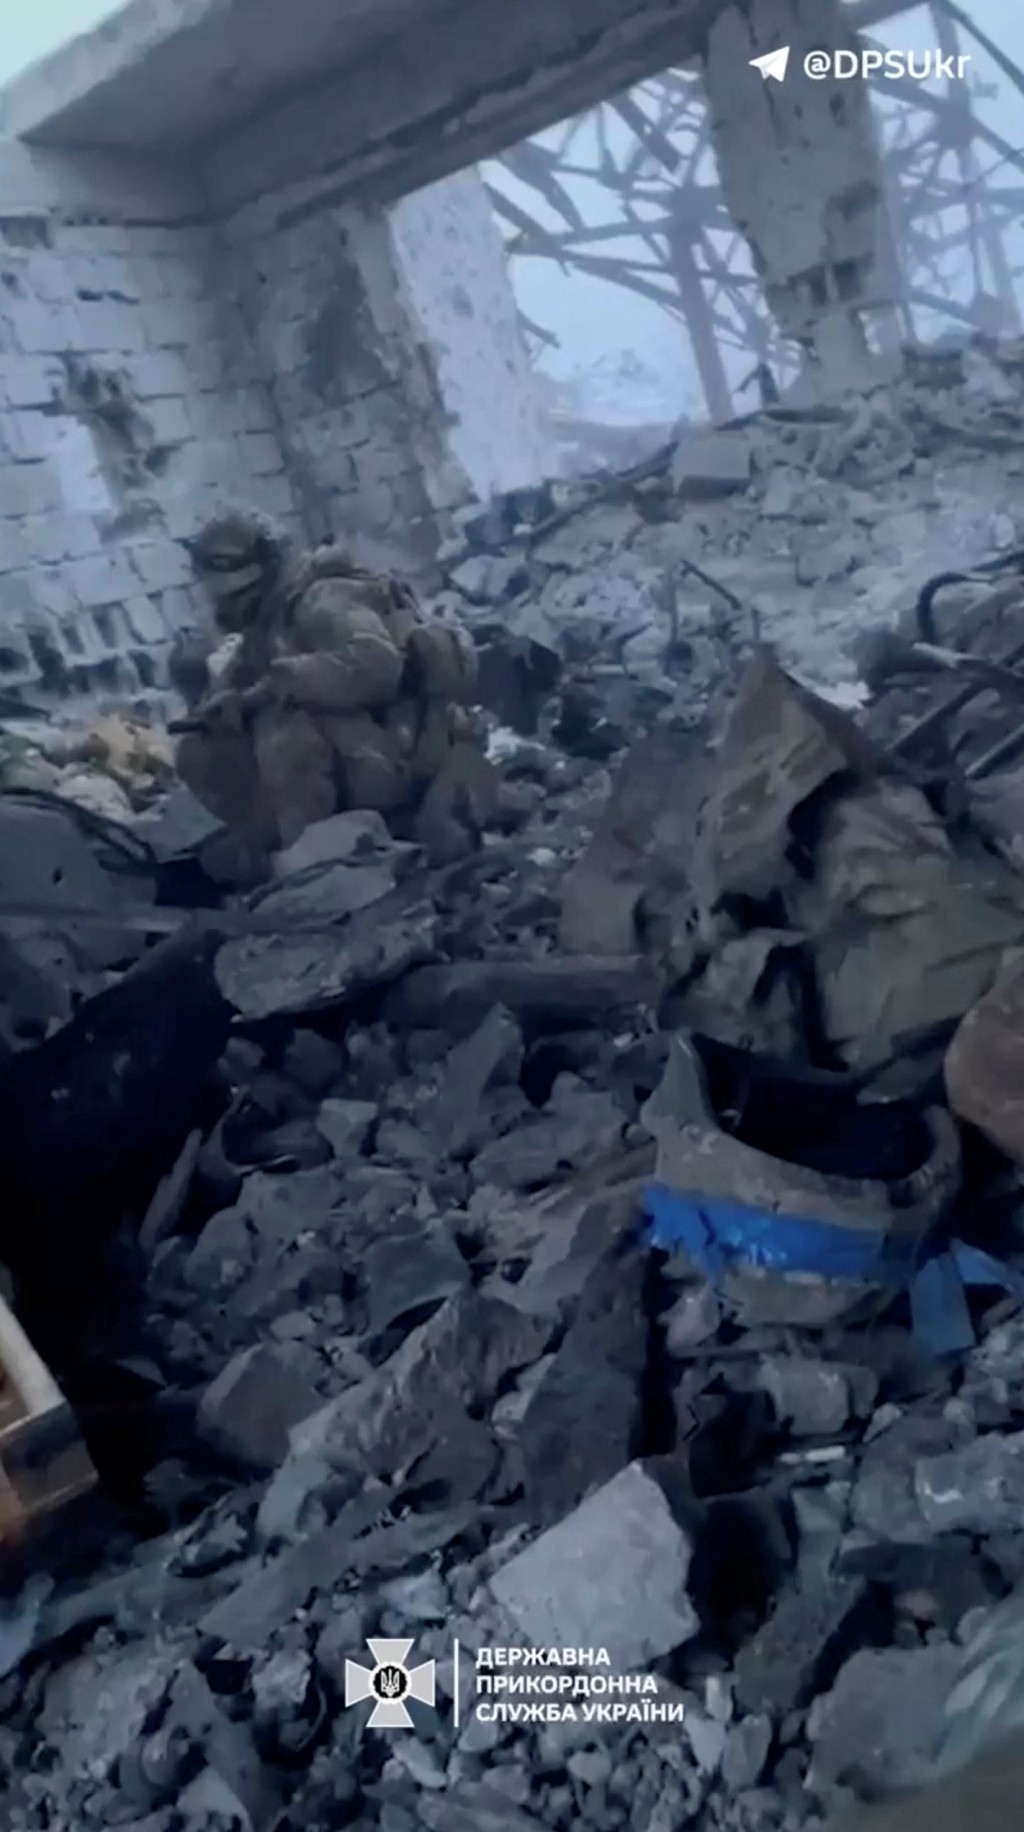 烏克蘭士兵坐在幾乎全毀的建築物瓦礫中。 路透社